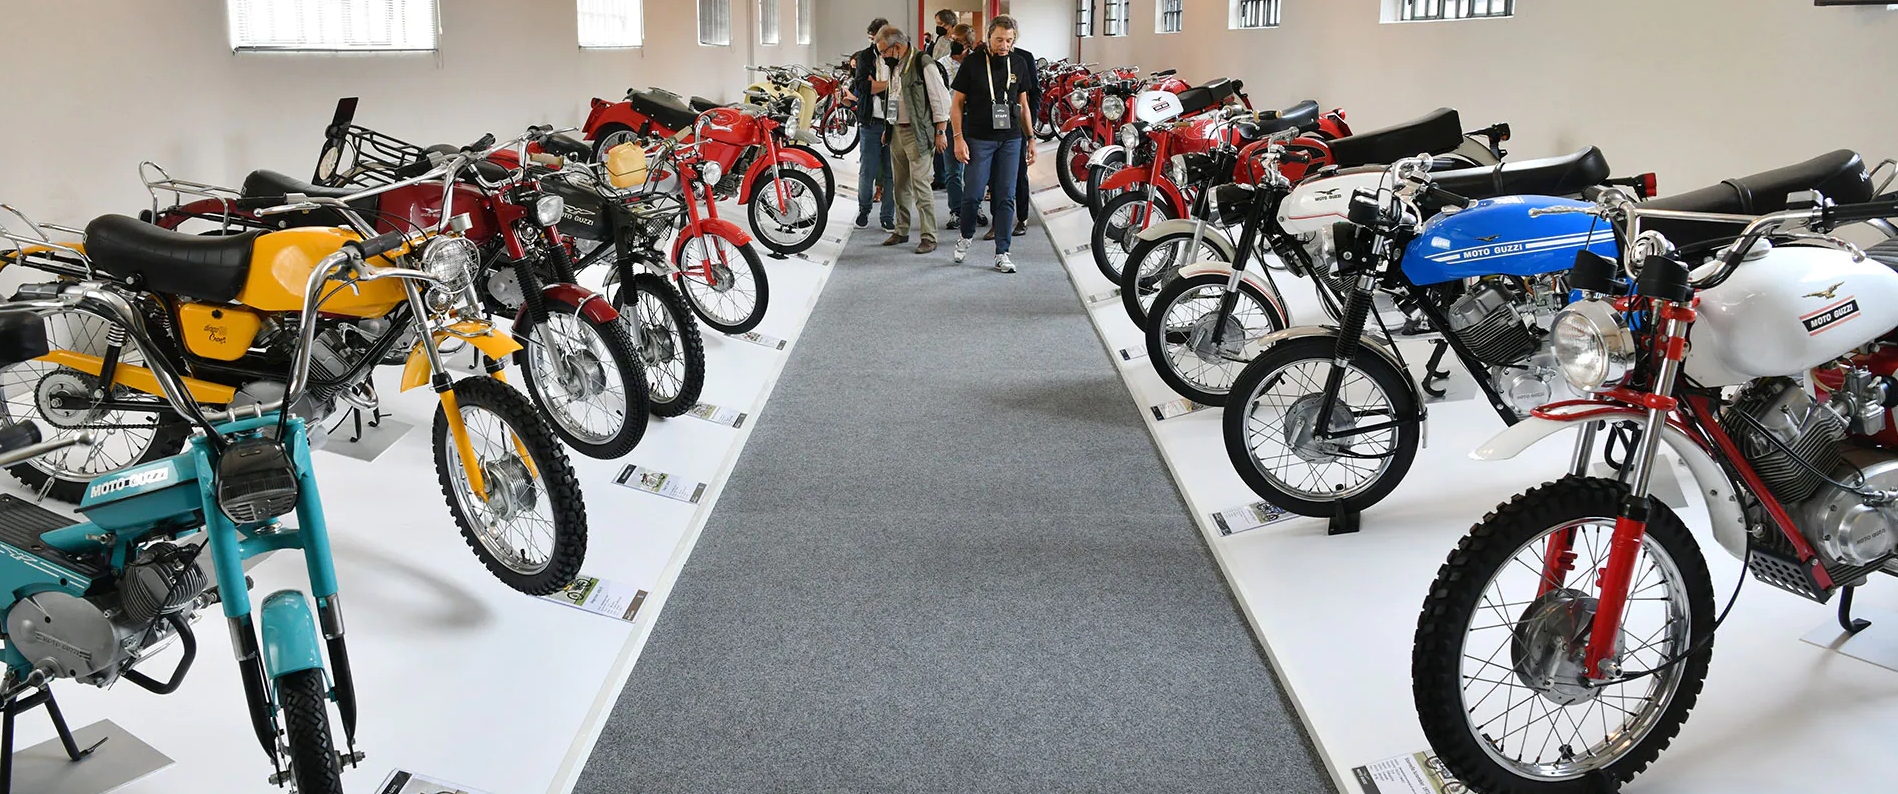 Museo del Motociclo Moto Guzzi